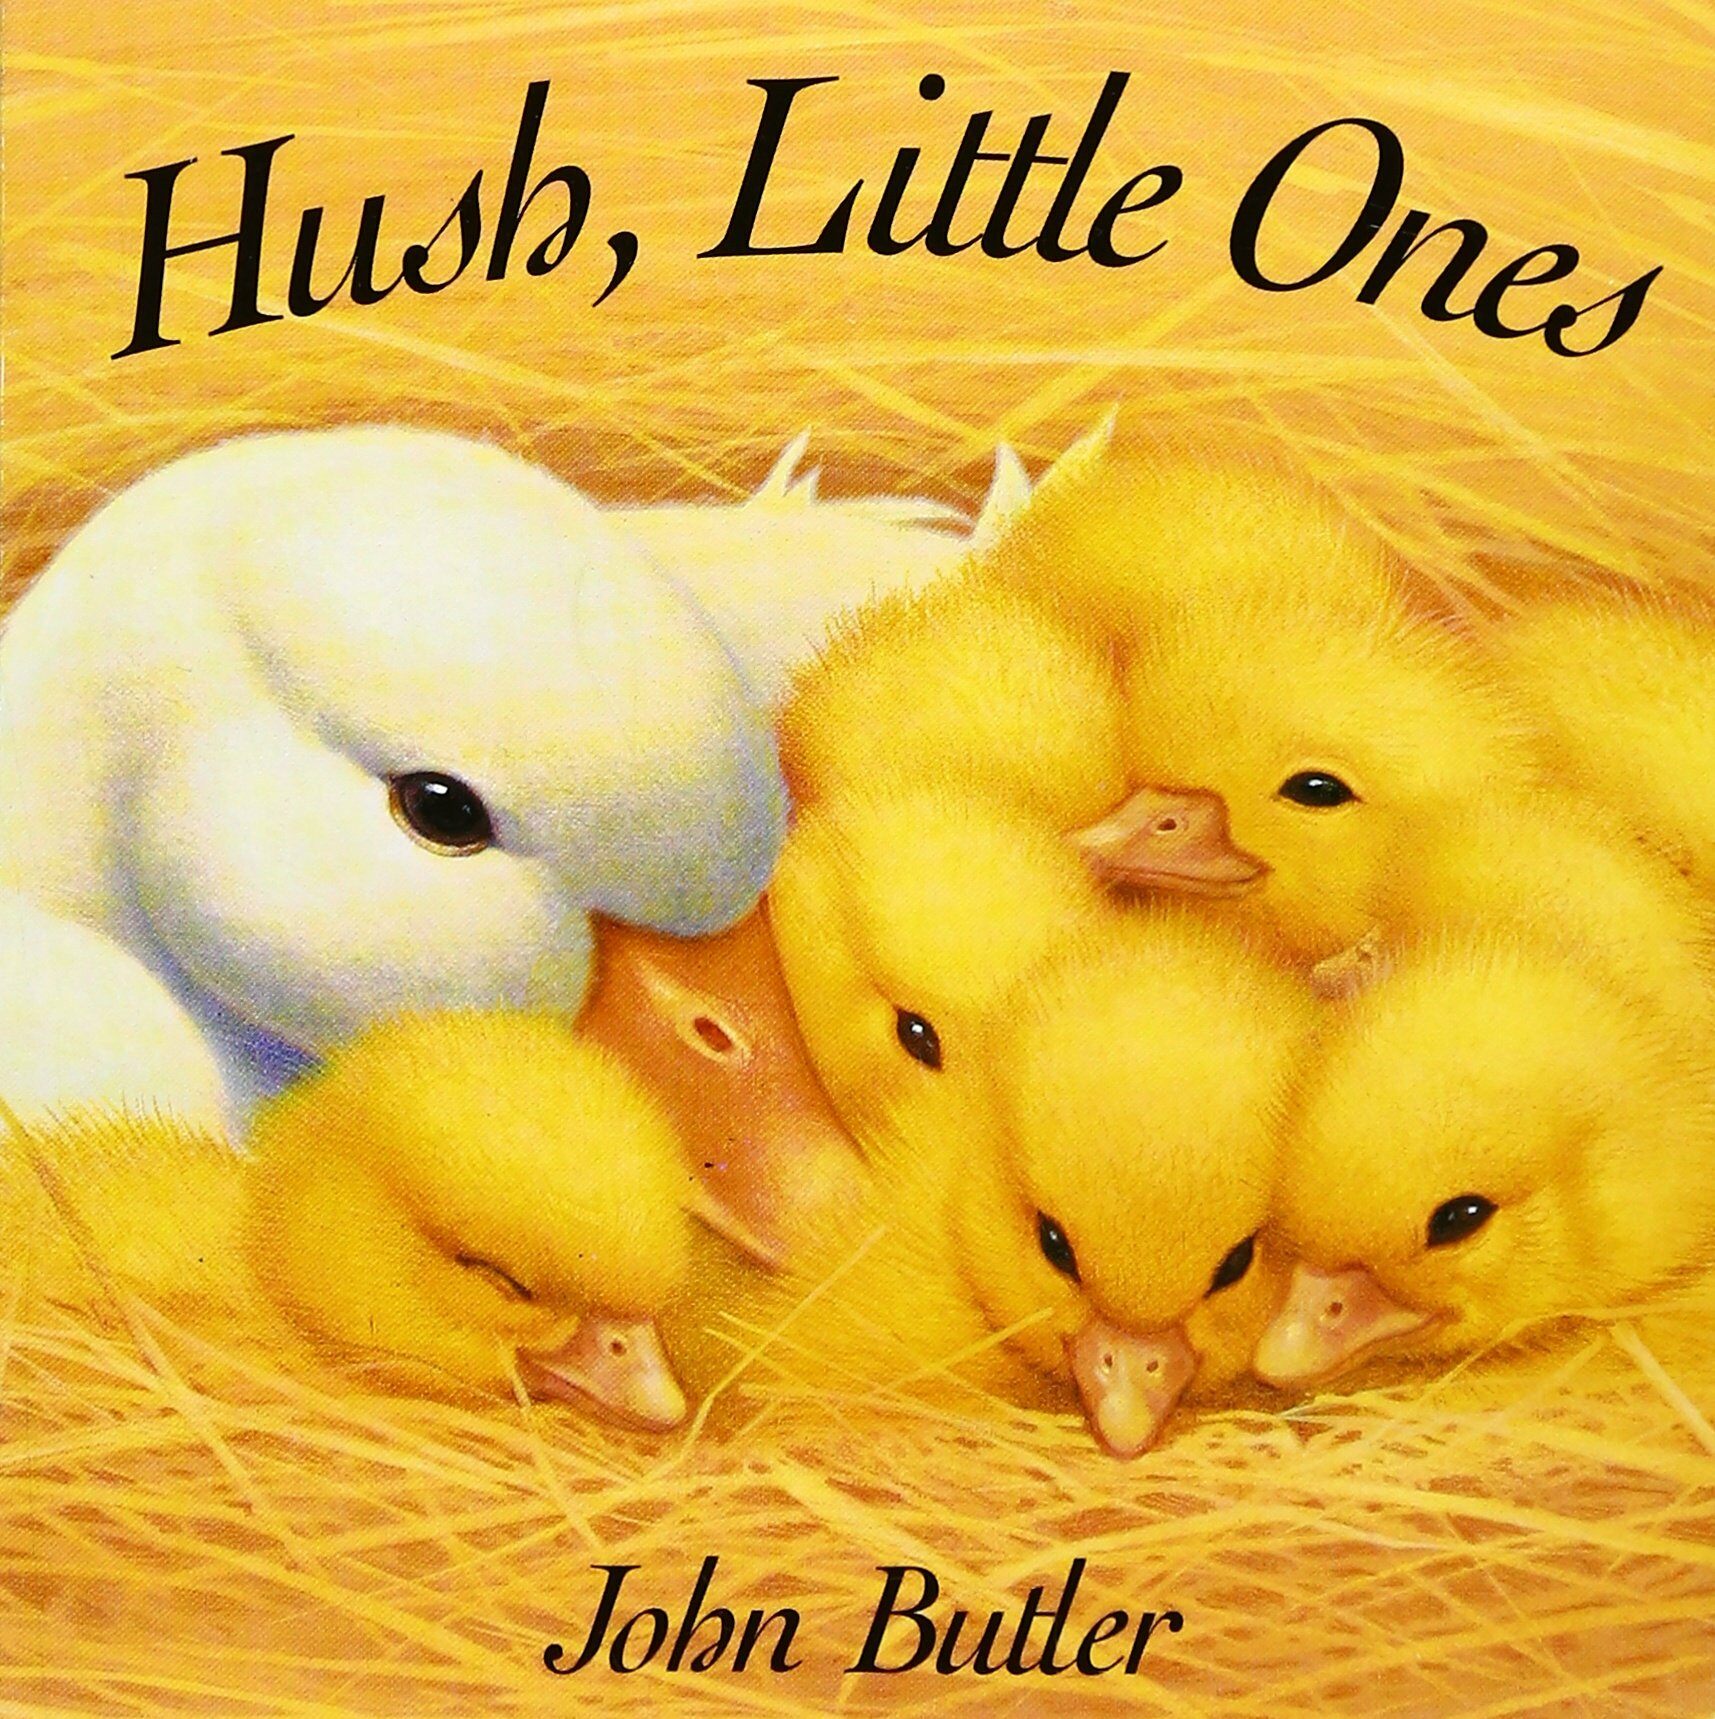 Hush, Little Ones (Board Books)